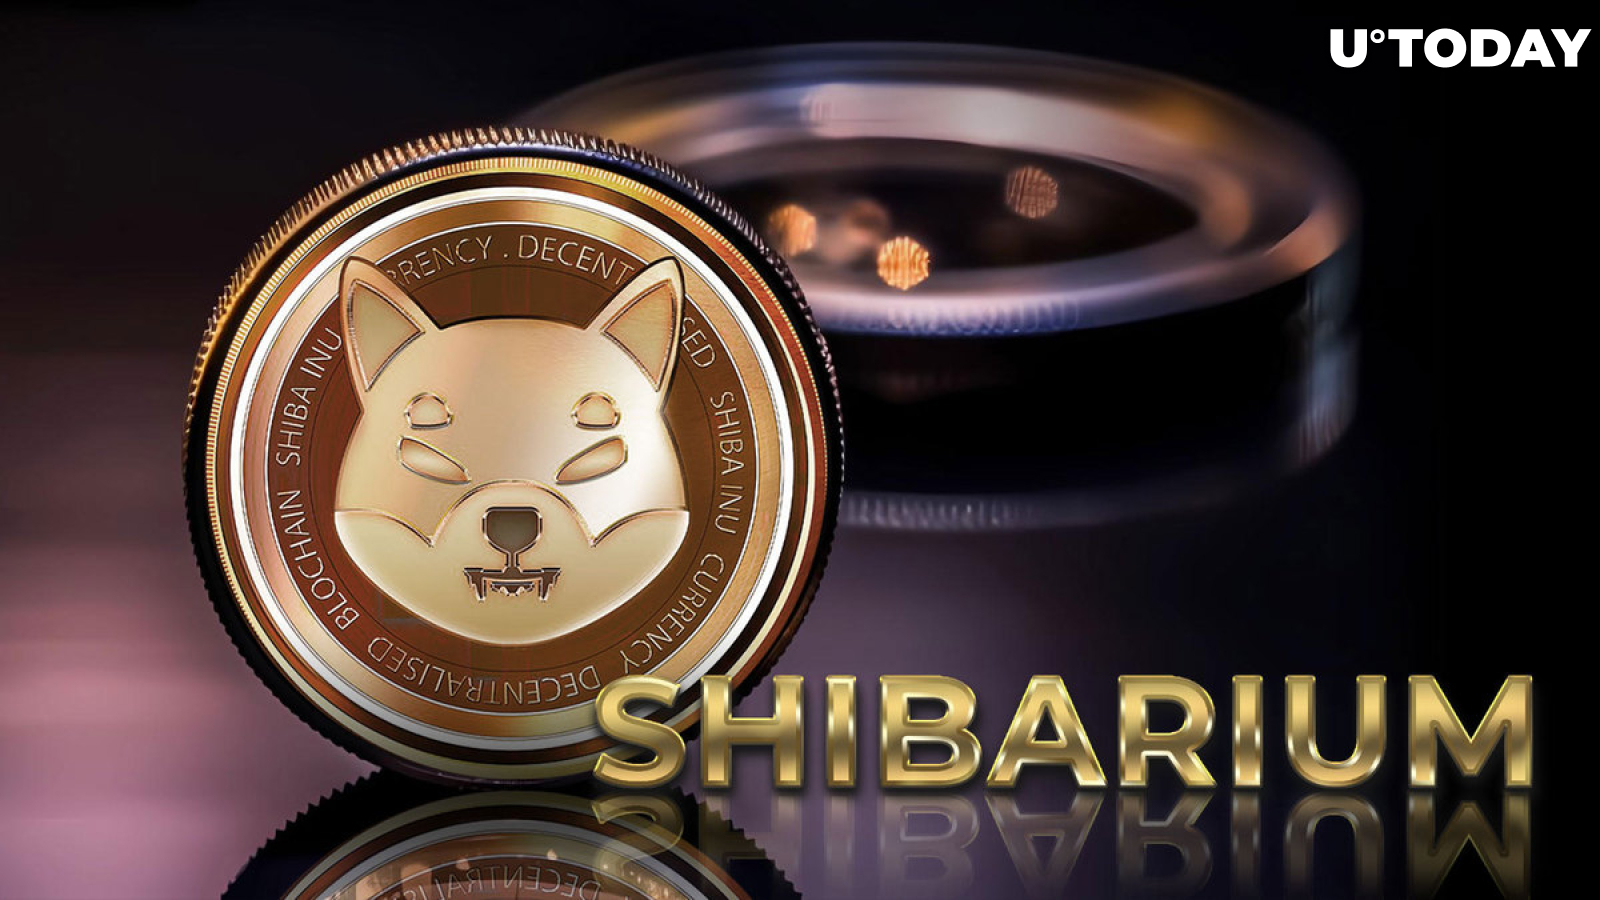 Shibarium Eyes Another Epic Milestone